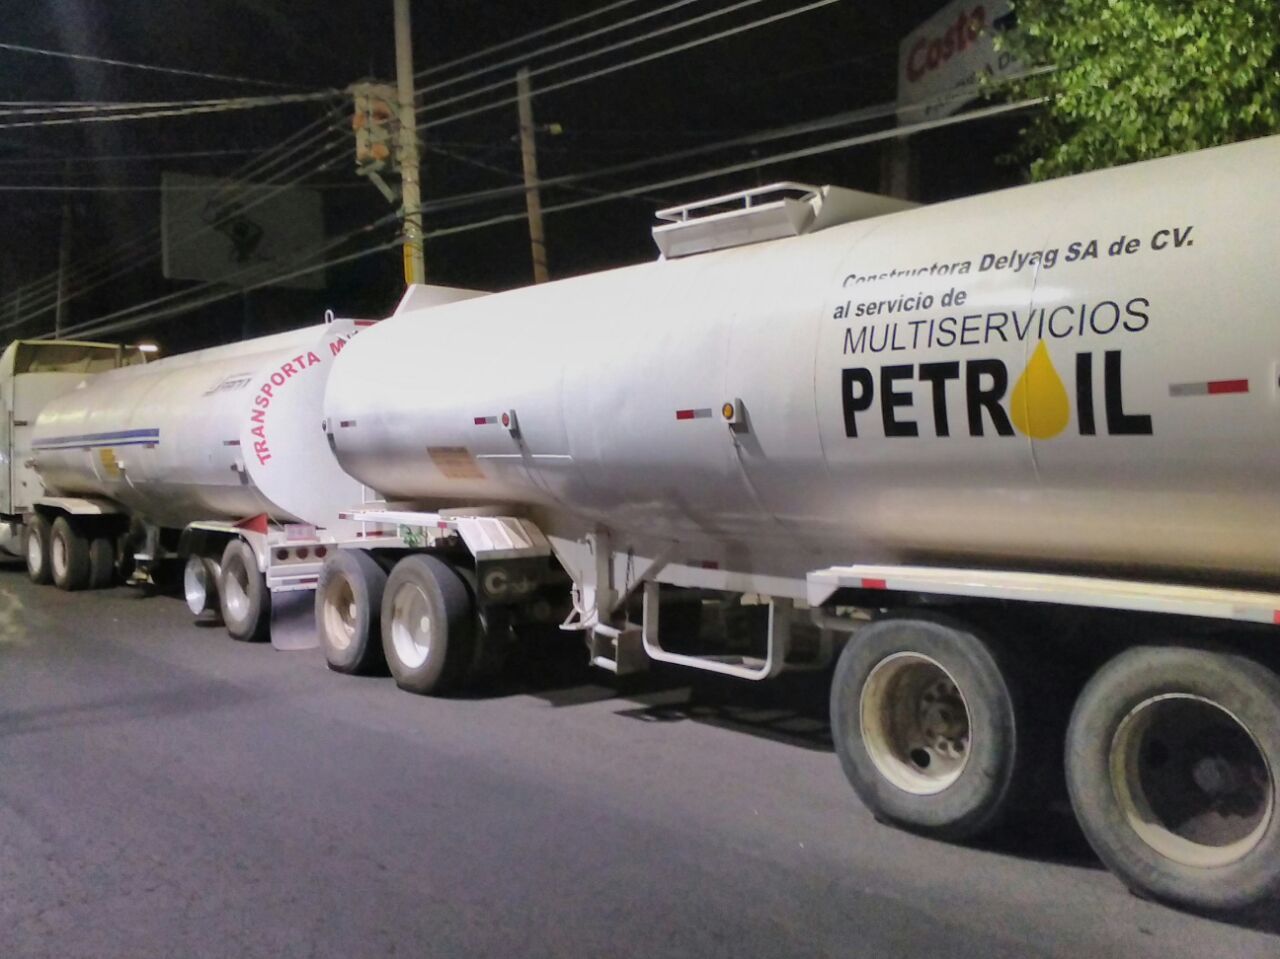  Policía de Tequisquiapan asegura tráiler doble cisterna cargado de combustible ilícito